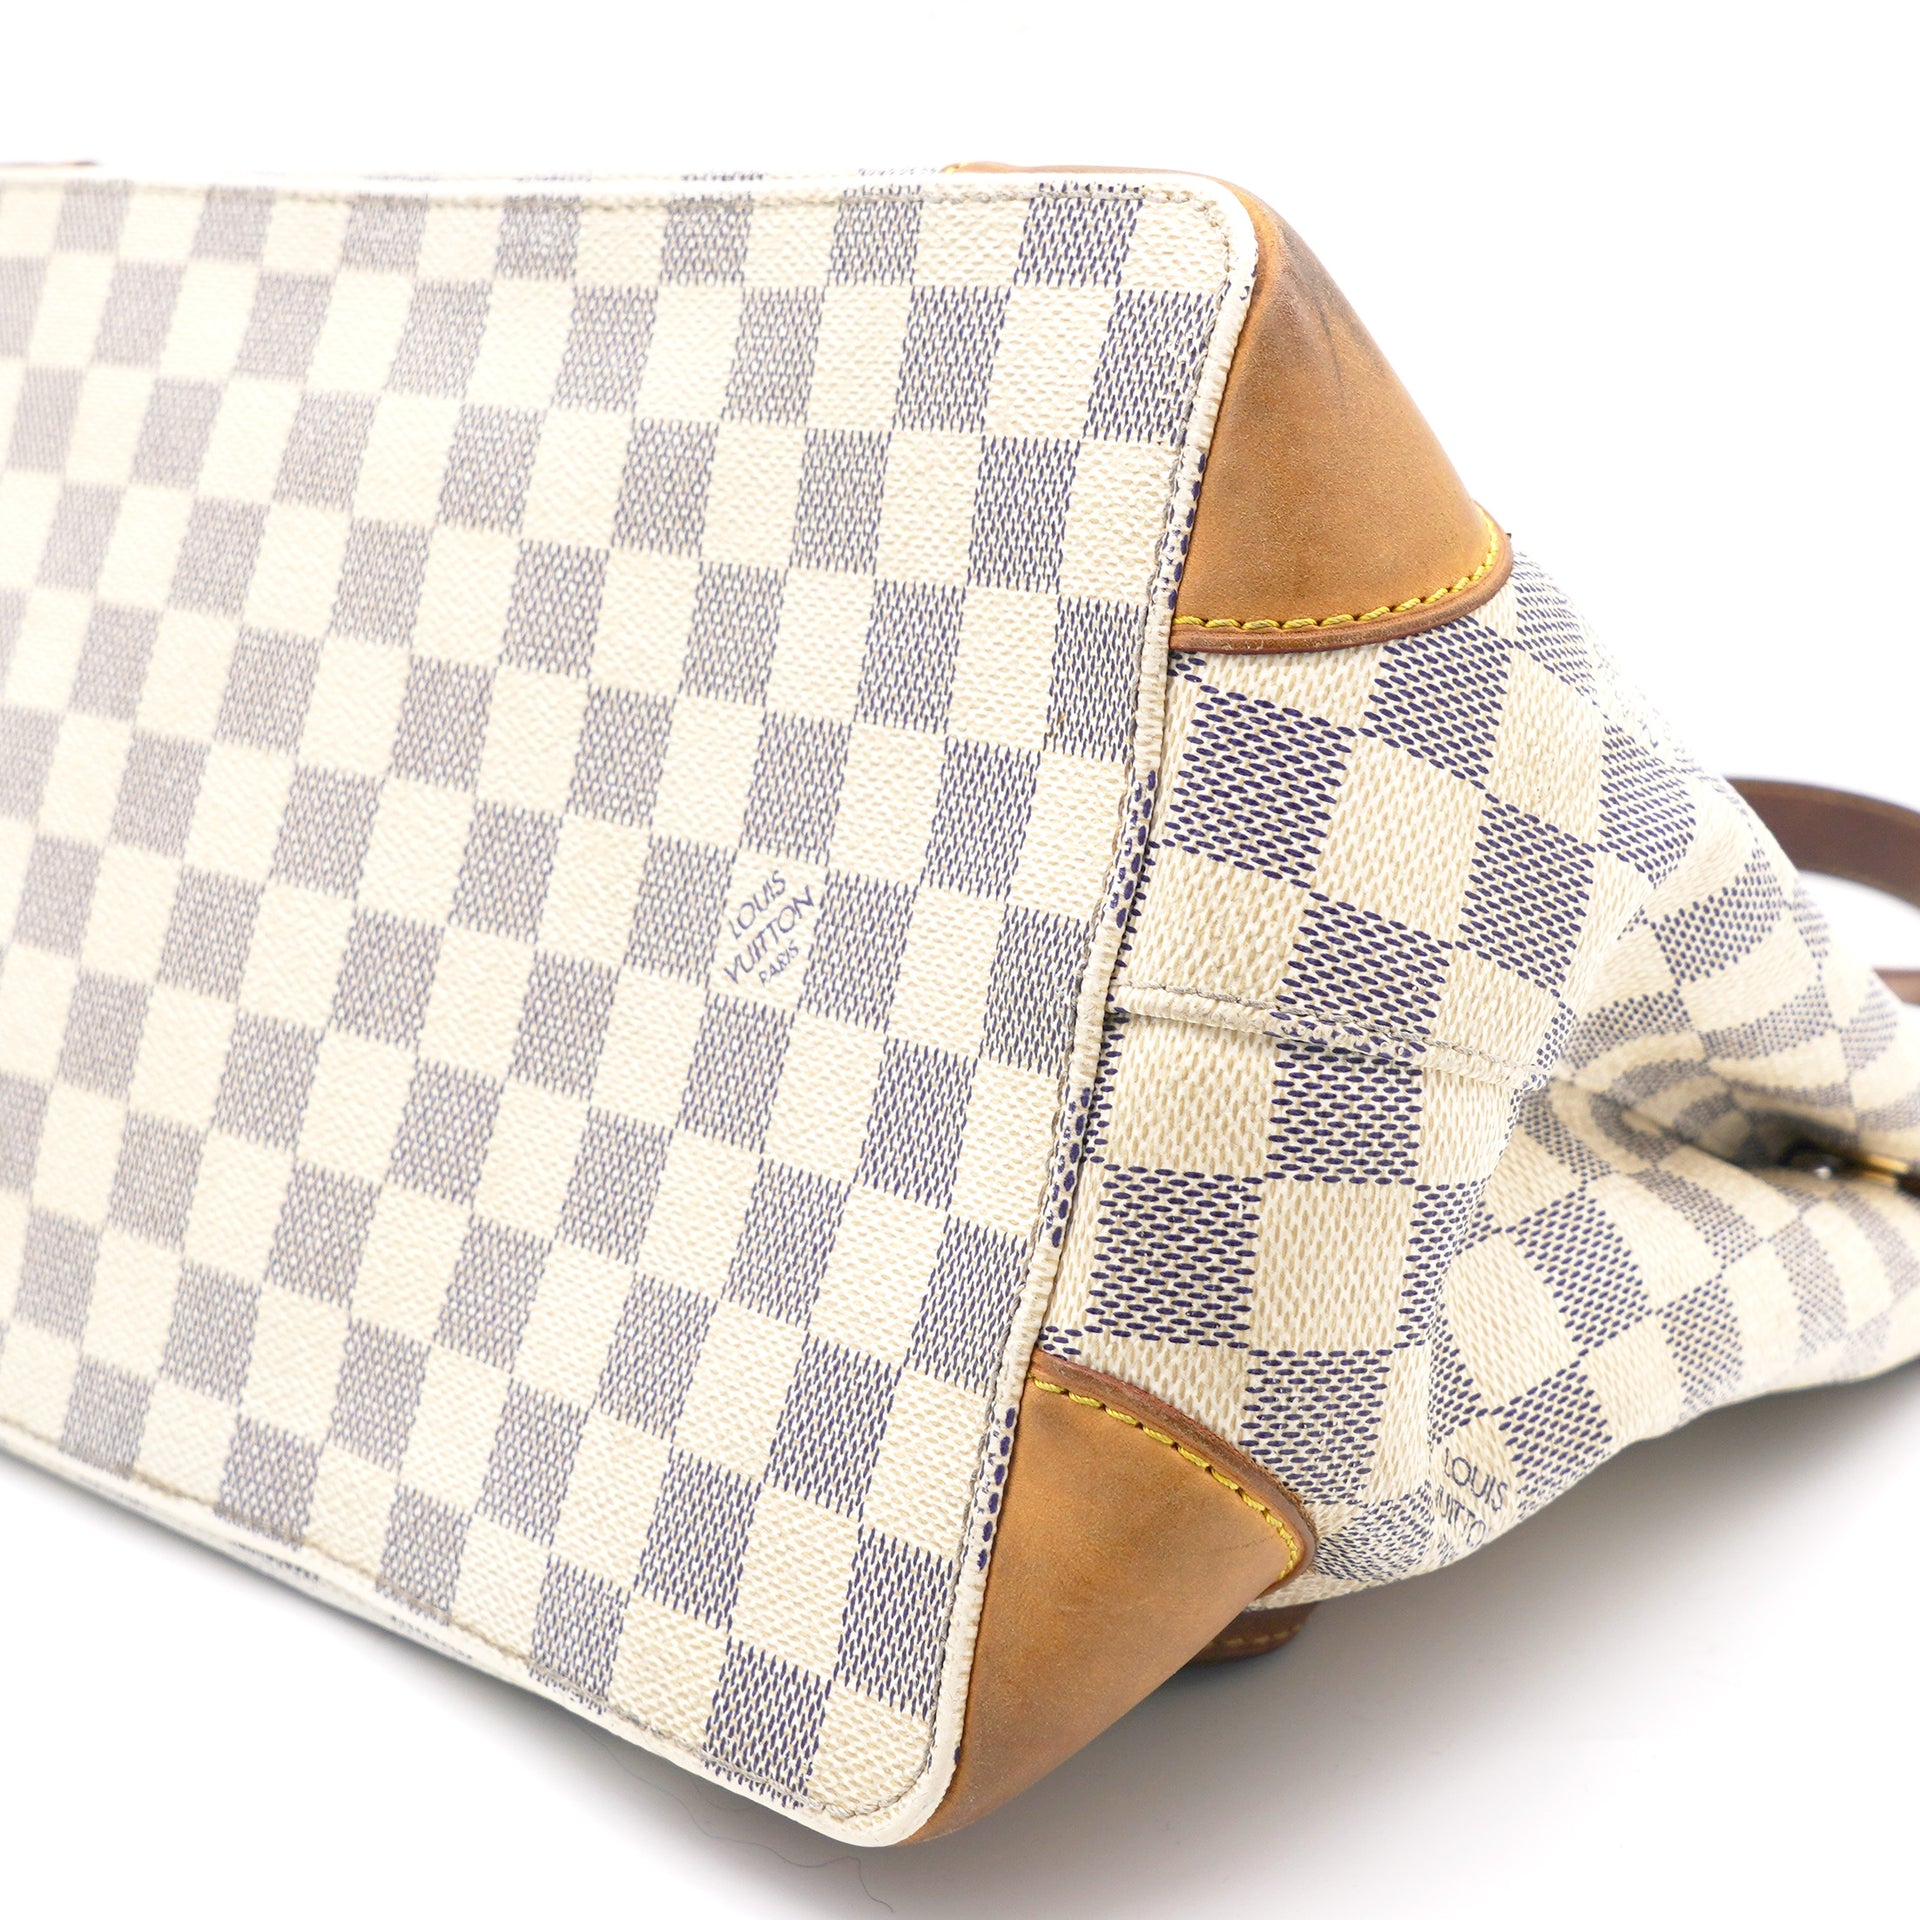 Authentic Louis Vuitton Hampstead PM Azur Damier Tote Handbag Bag CR0151  Spain